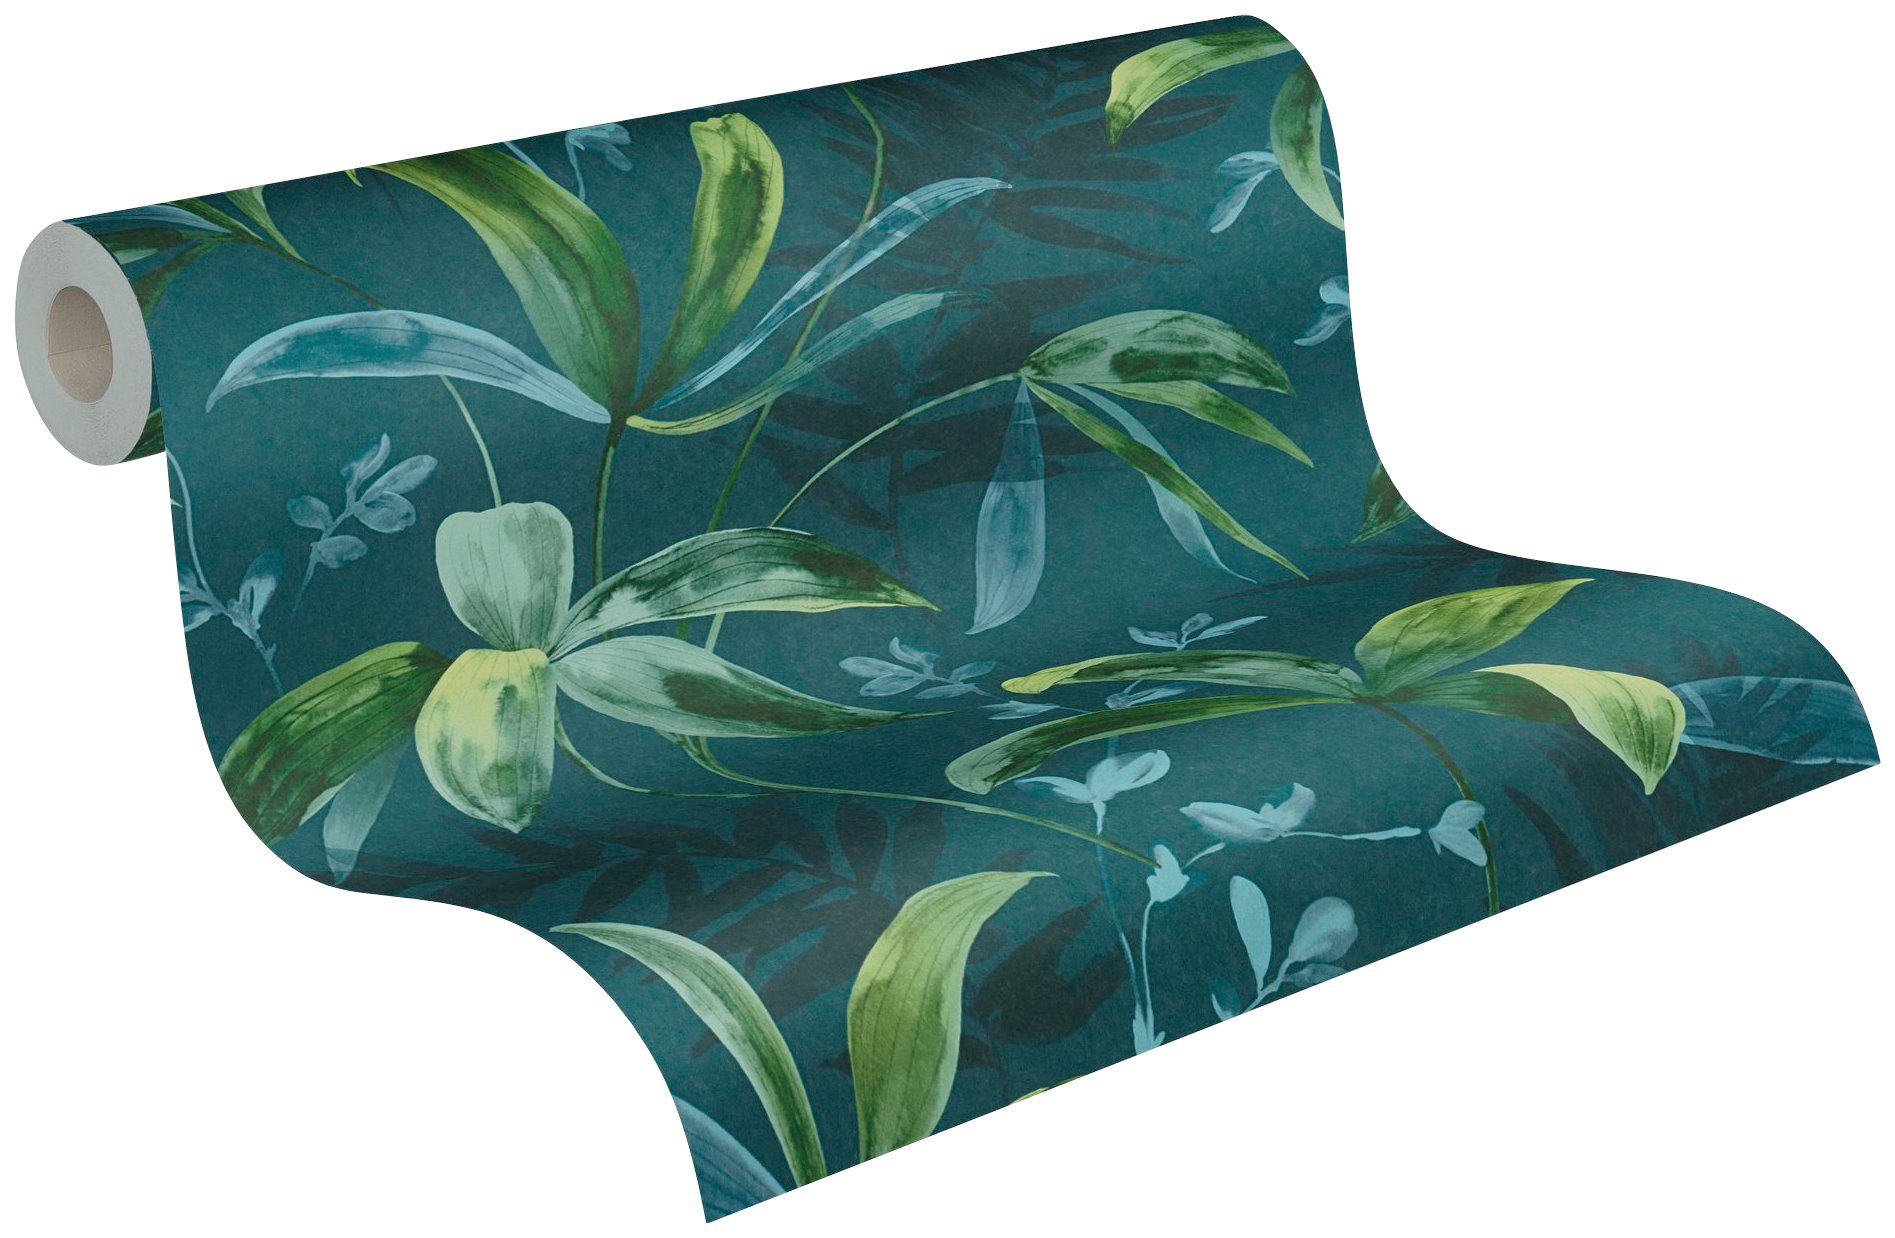 botanisch, Vliestapete floral, Paper glatt, Tapete Palmentapete tropisch, Jungle Chic, blau/grün Dschungel Architects